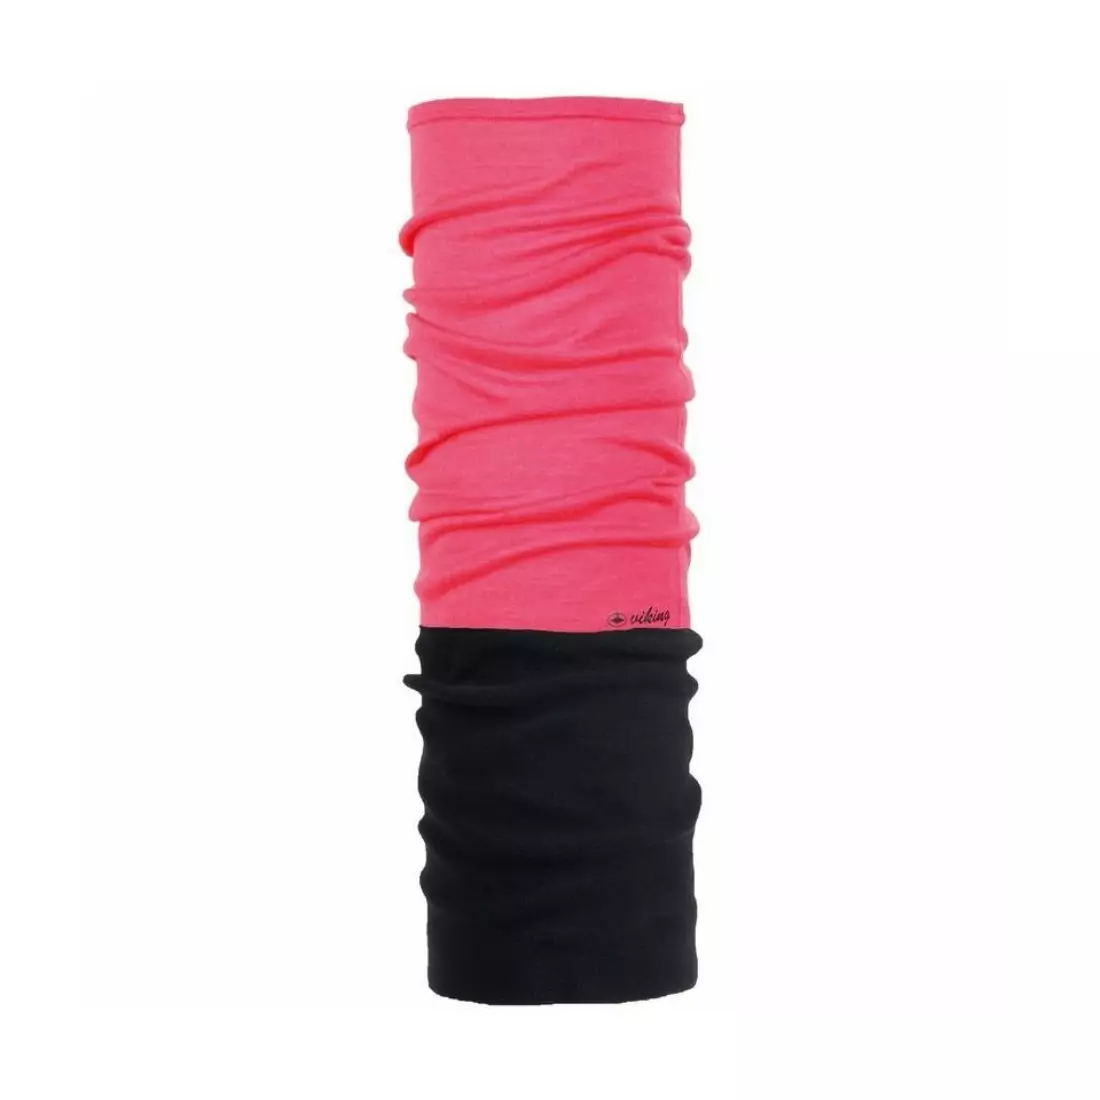 VIKING multifunctional scarf MERINO POLARTEC OUTSIDE, pink 465/18/4332/46